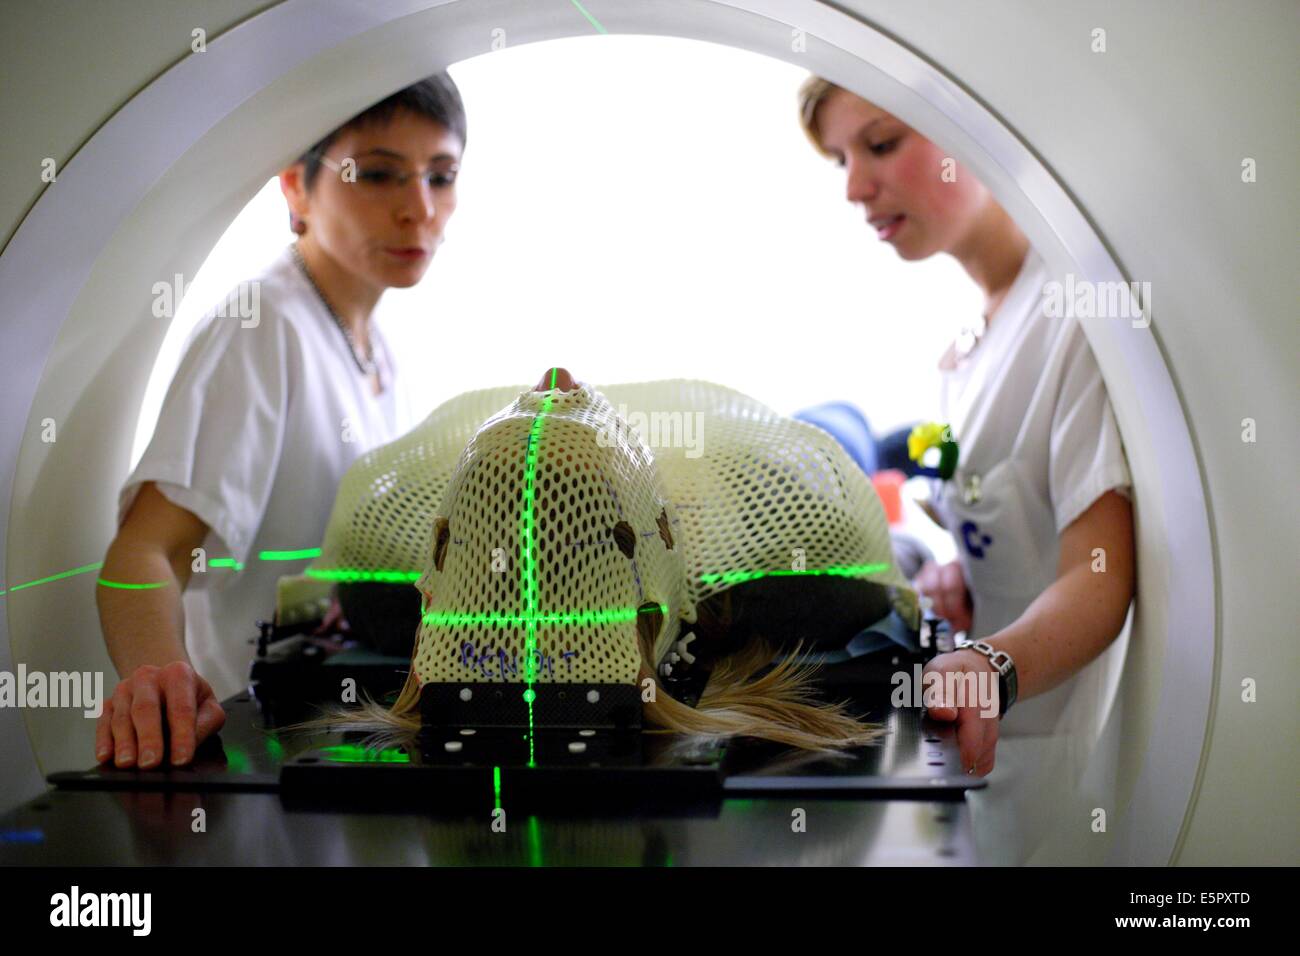 En janvier 2007, l'Institut Curie, Paris, France, a été le premier hôpital en France pour traiter le cancer avec la tomothérapie, ce Banque D'Images